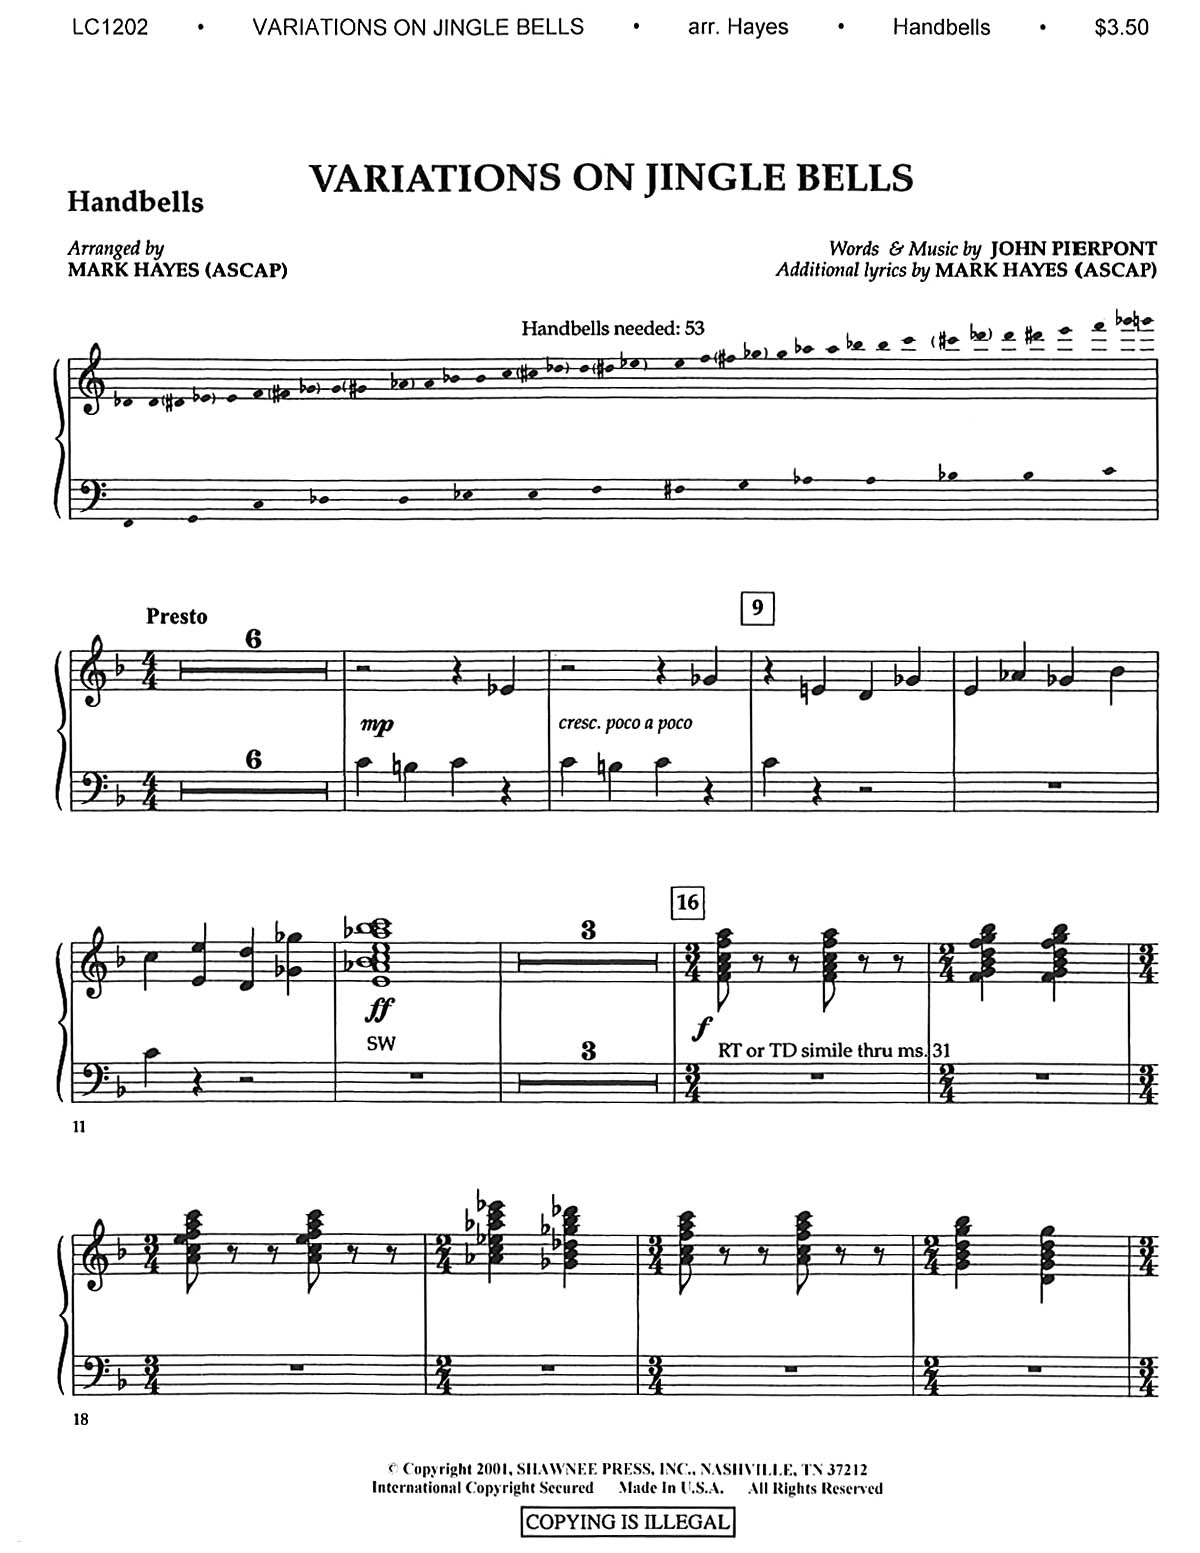 Variations on Jingle Bells: Handbells: Part